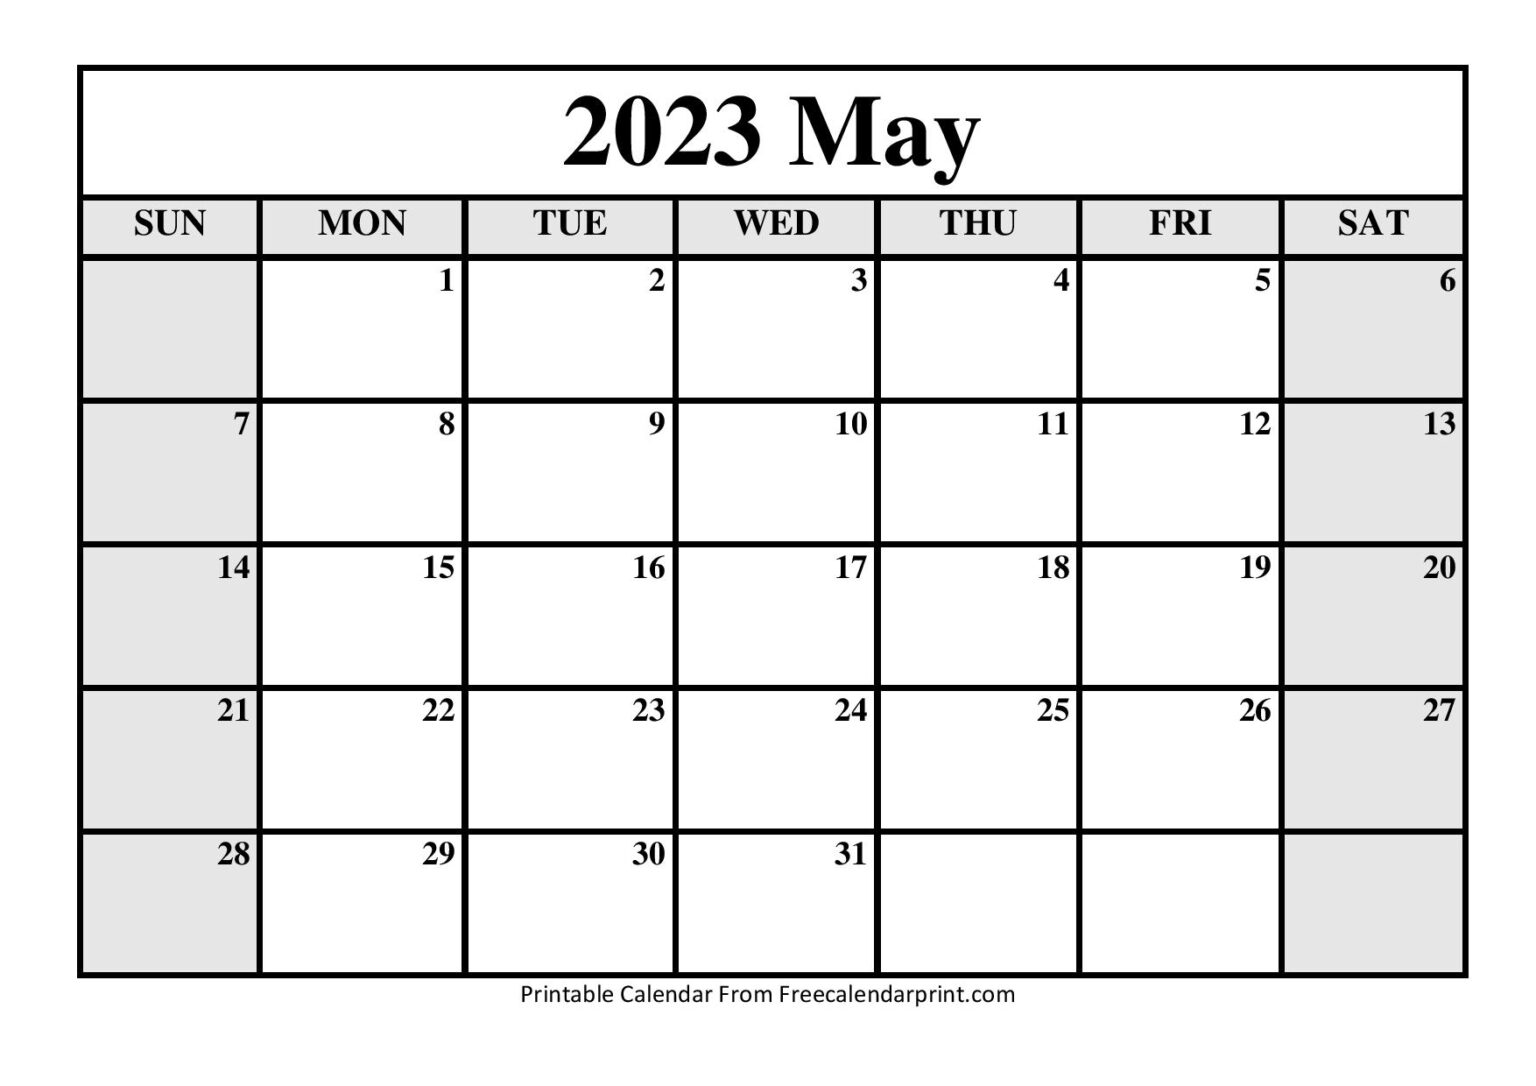 may-2023-calendar-printable-free-printable-world-holiday-riset